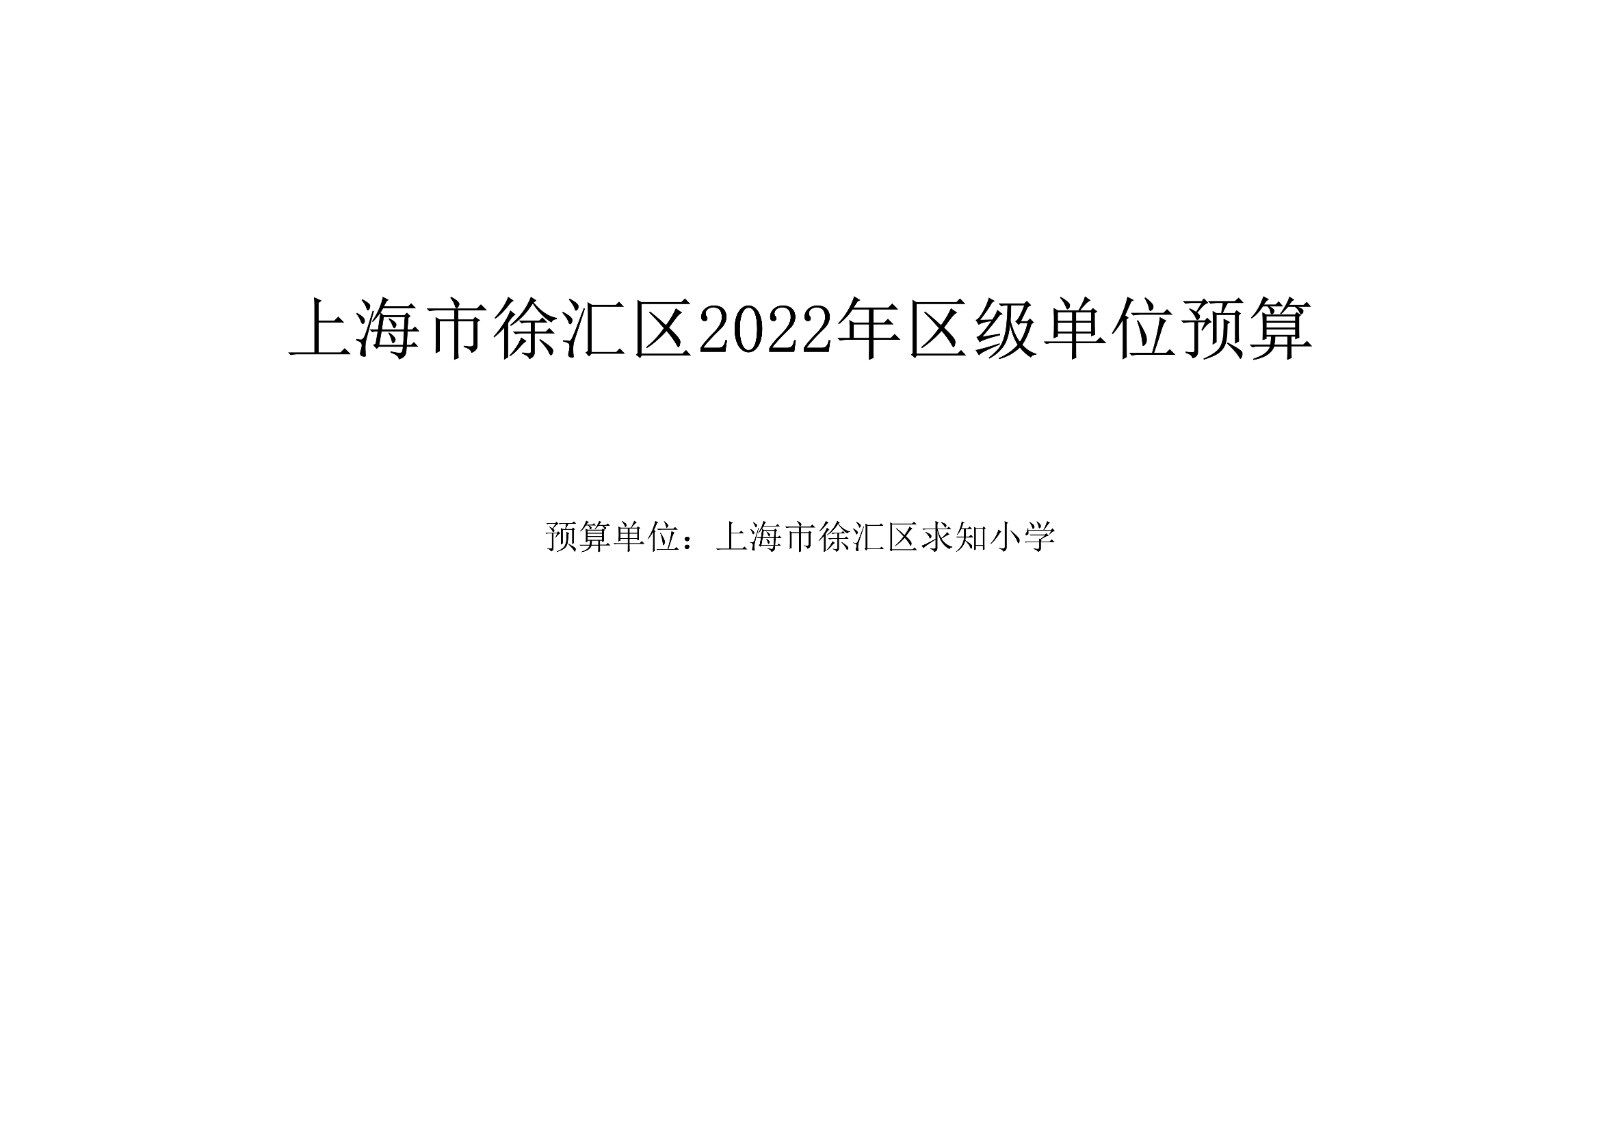 021412082193_0上海市徐汇求知小学2022年度单位预算_1.jpg